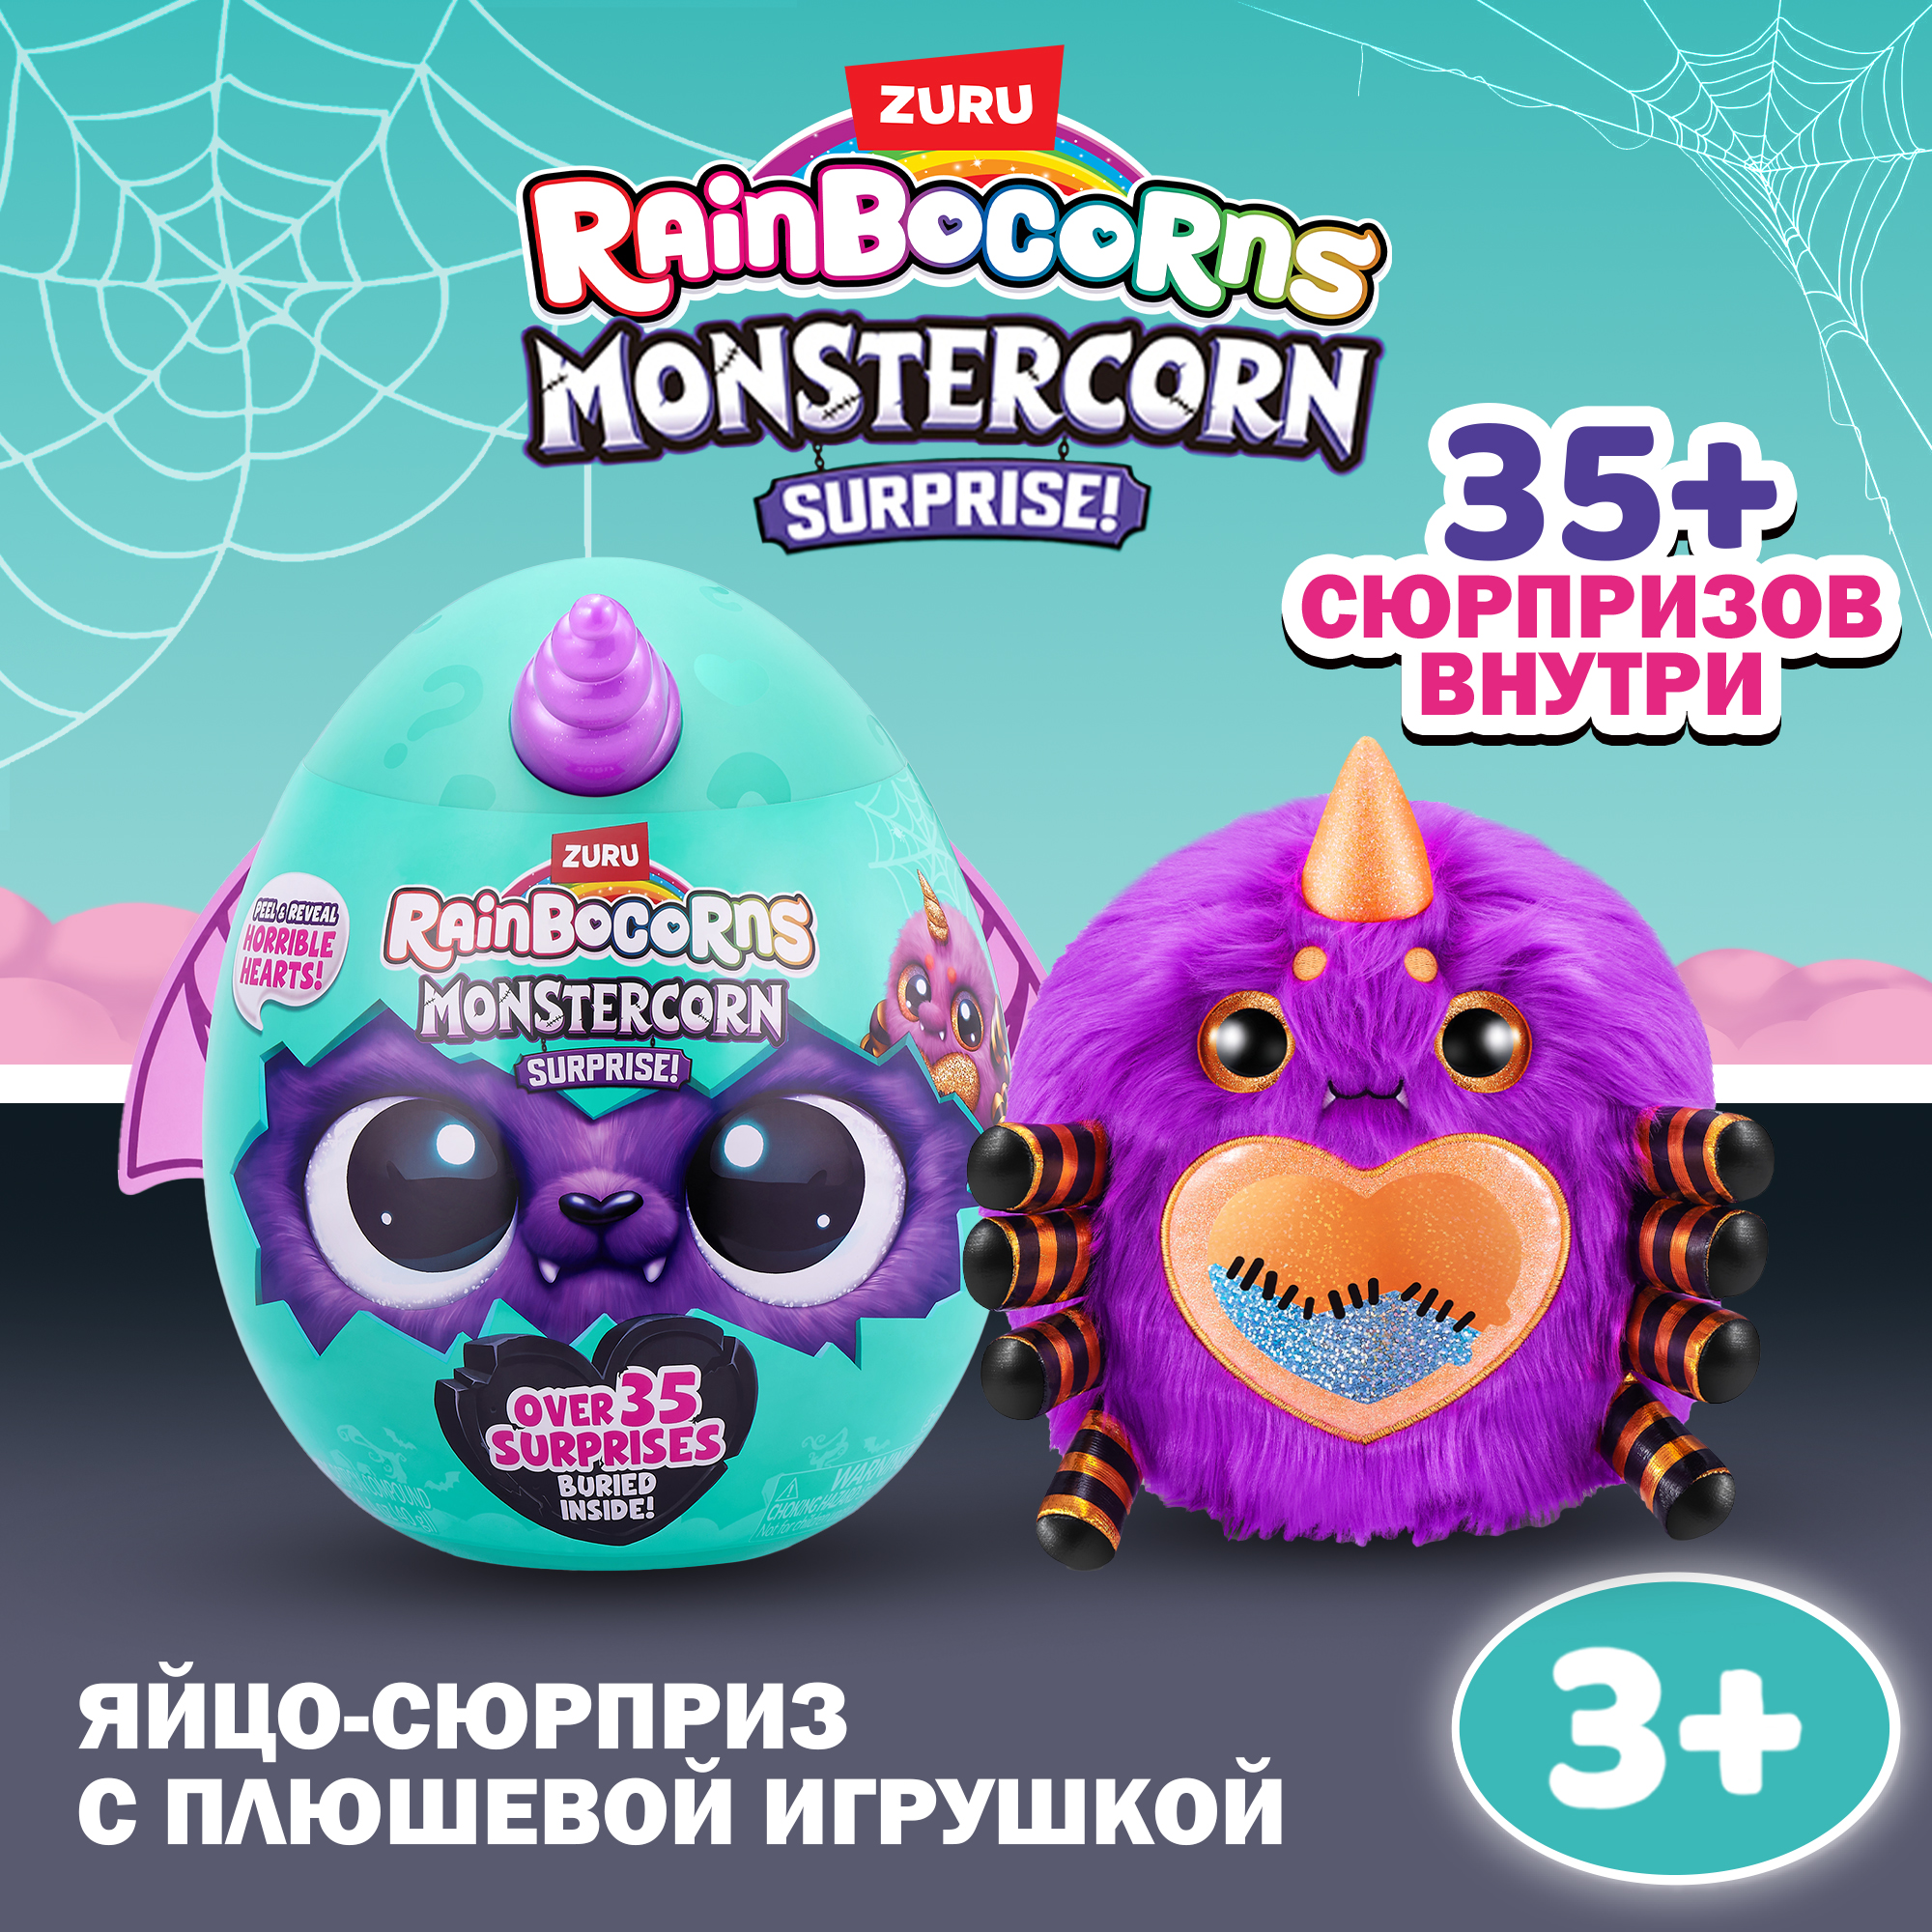 Игрушка Rainbocorns Monstercorn в непрозрачной упаковке (Сюрприз) 9297 - фото 1